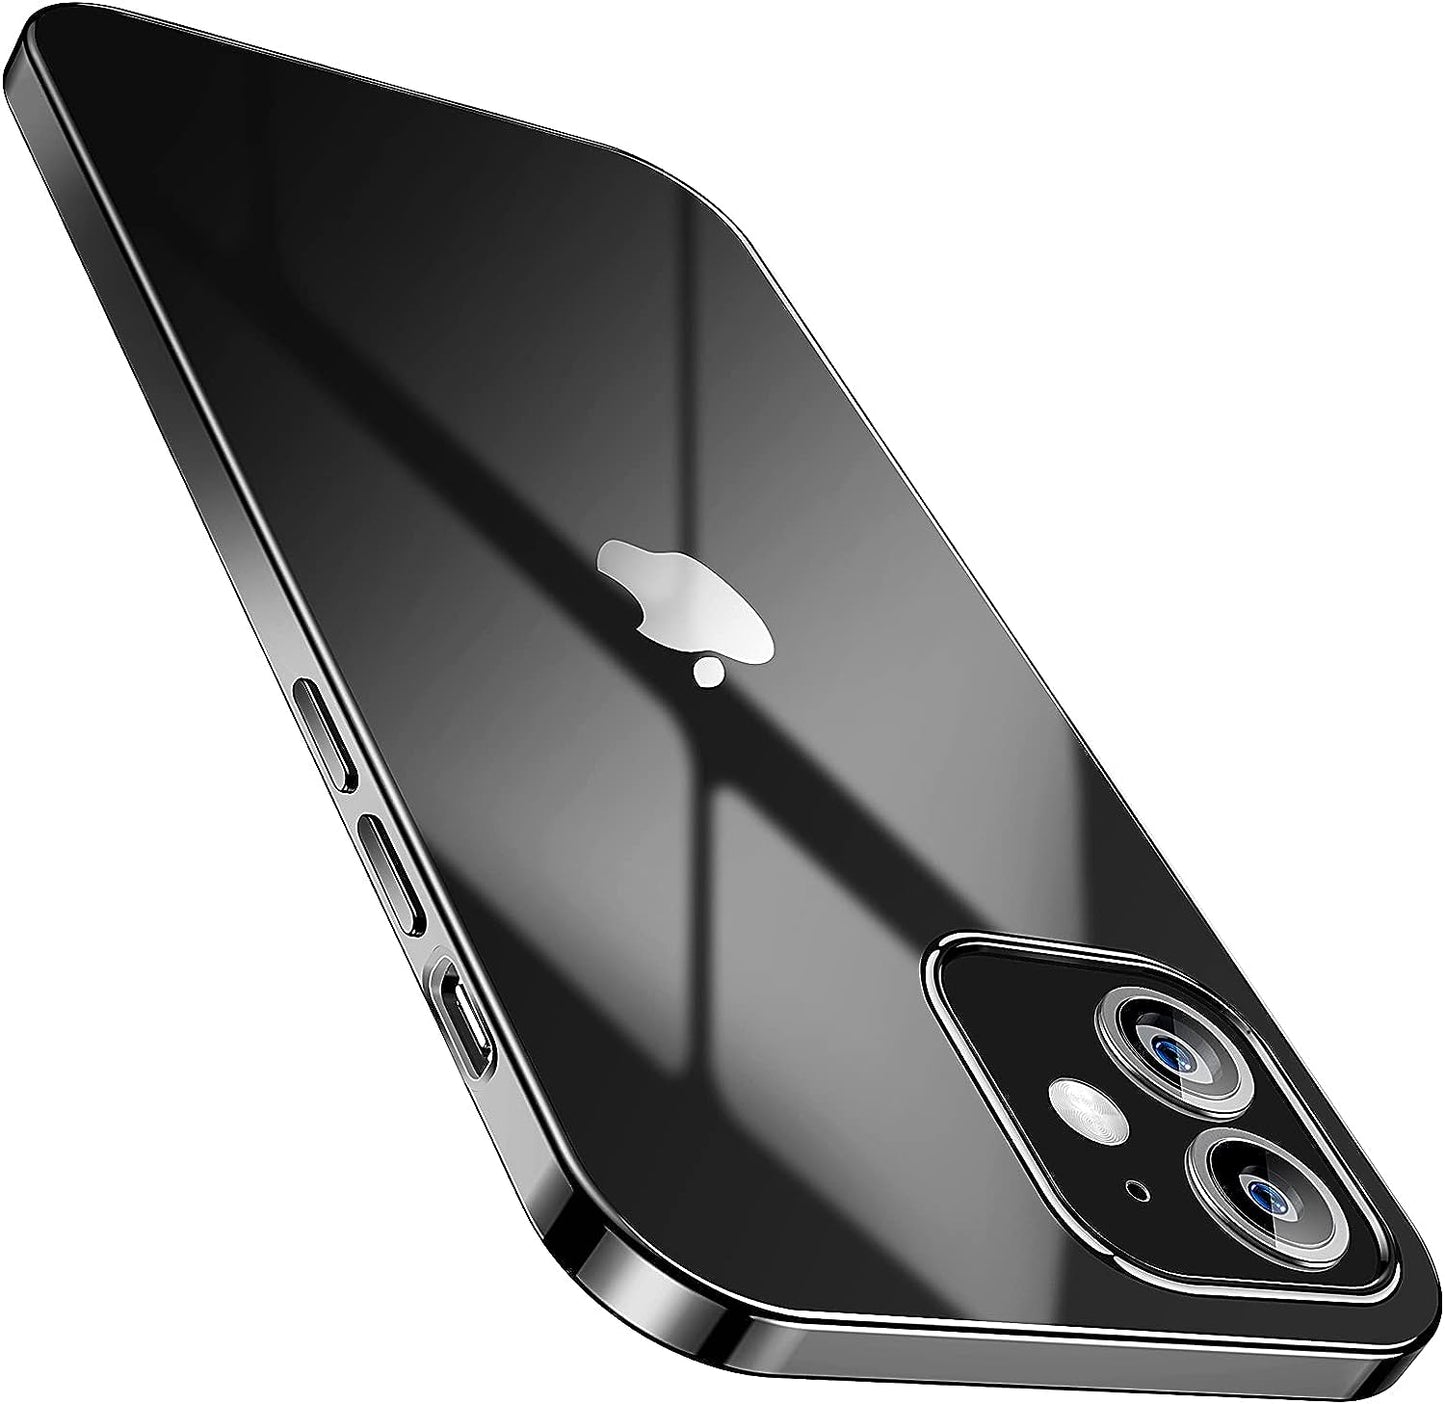 SMARTDEVIL Coque iPhone 12 Mini, Coque iPhone 12 Mini Transparente, AIR Cushion, Bumper Renforcé en TPU, Dos en PC, Protection Coin, Compatible avec iPhone 12 Mini-Argent